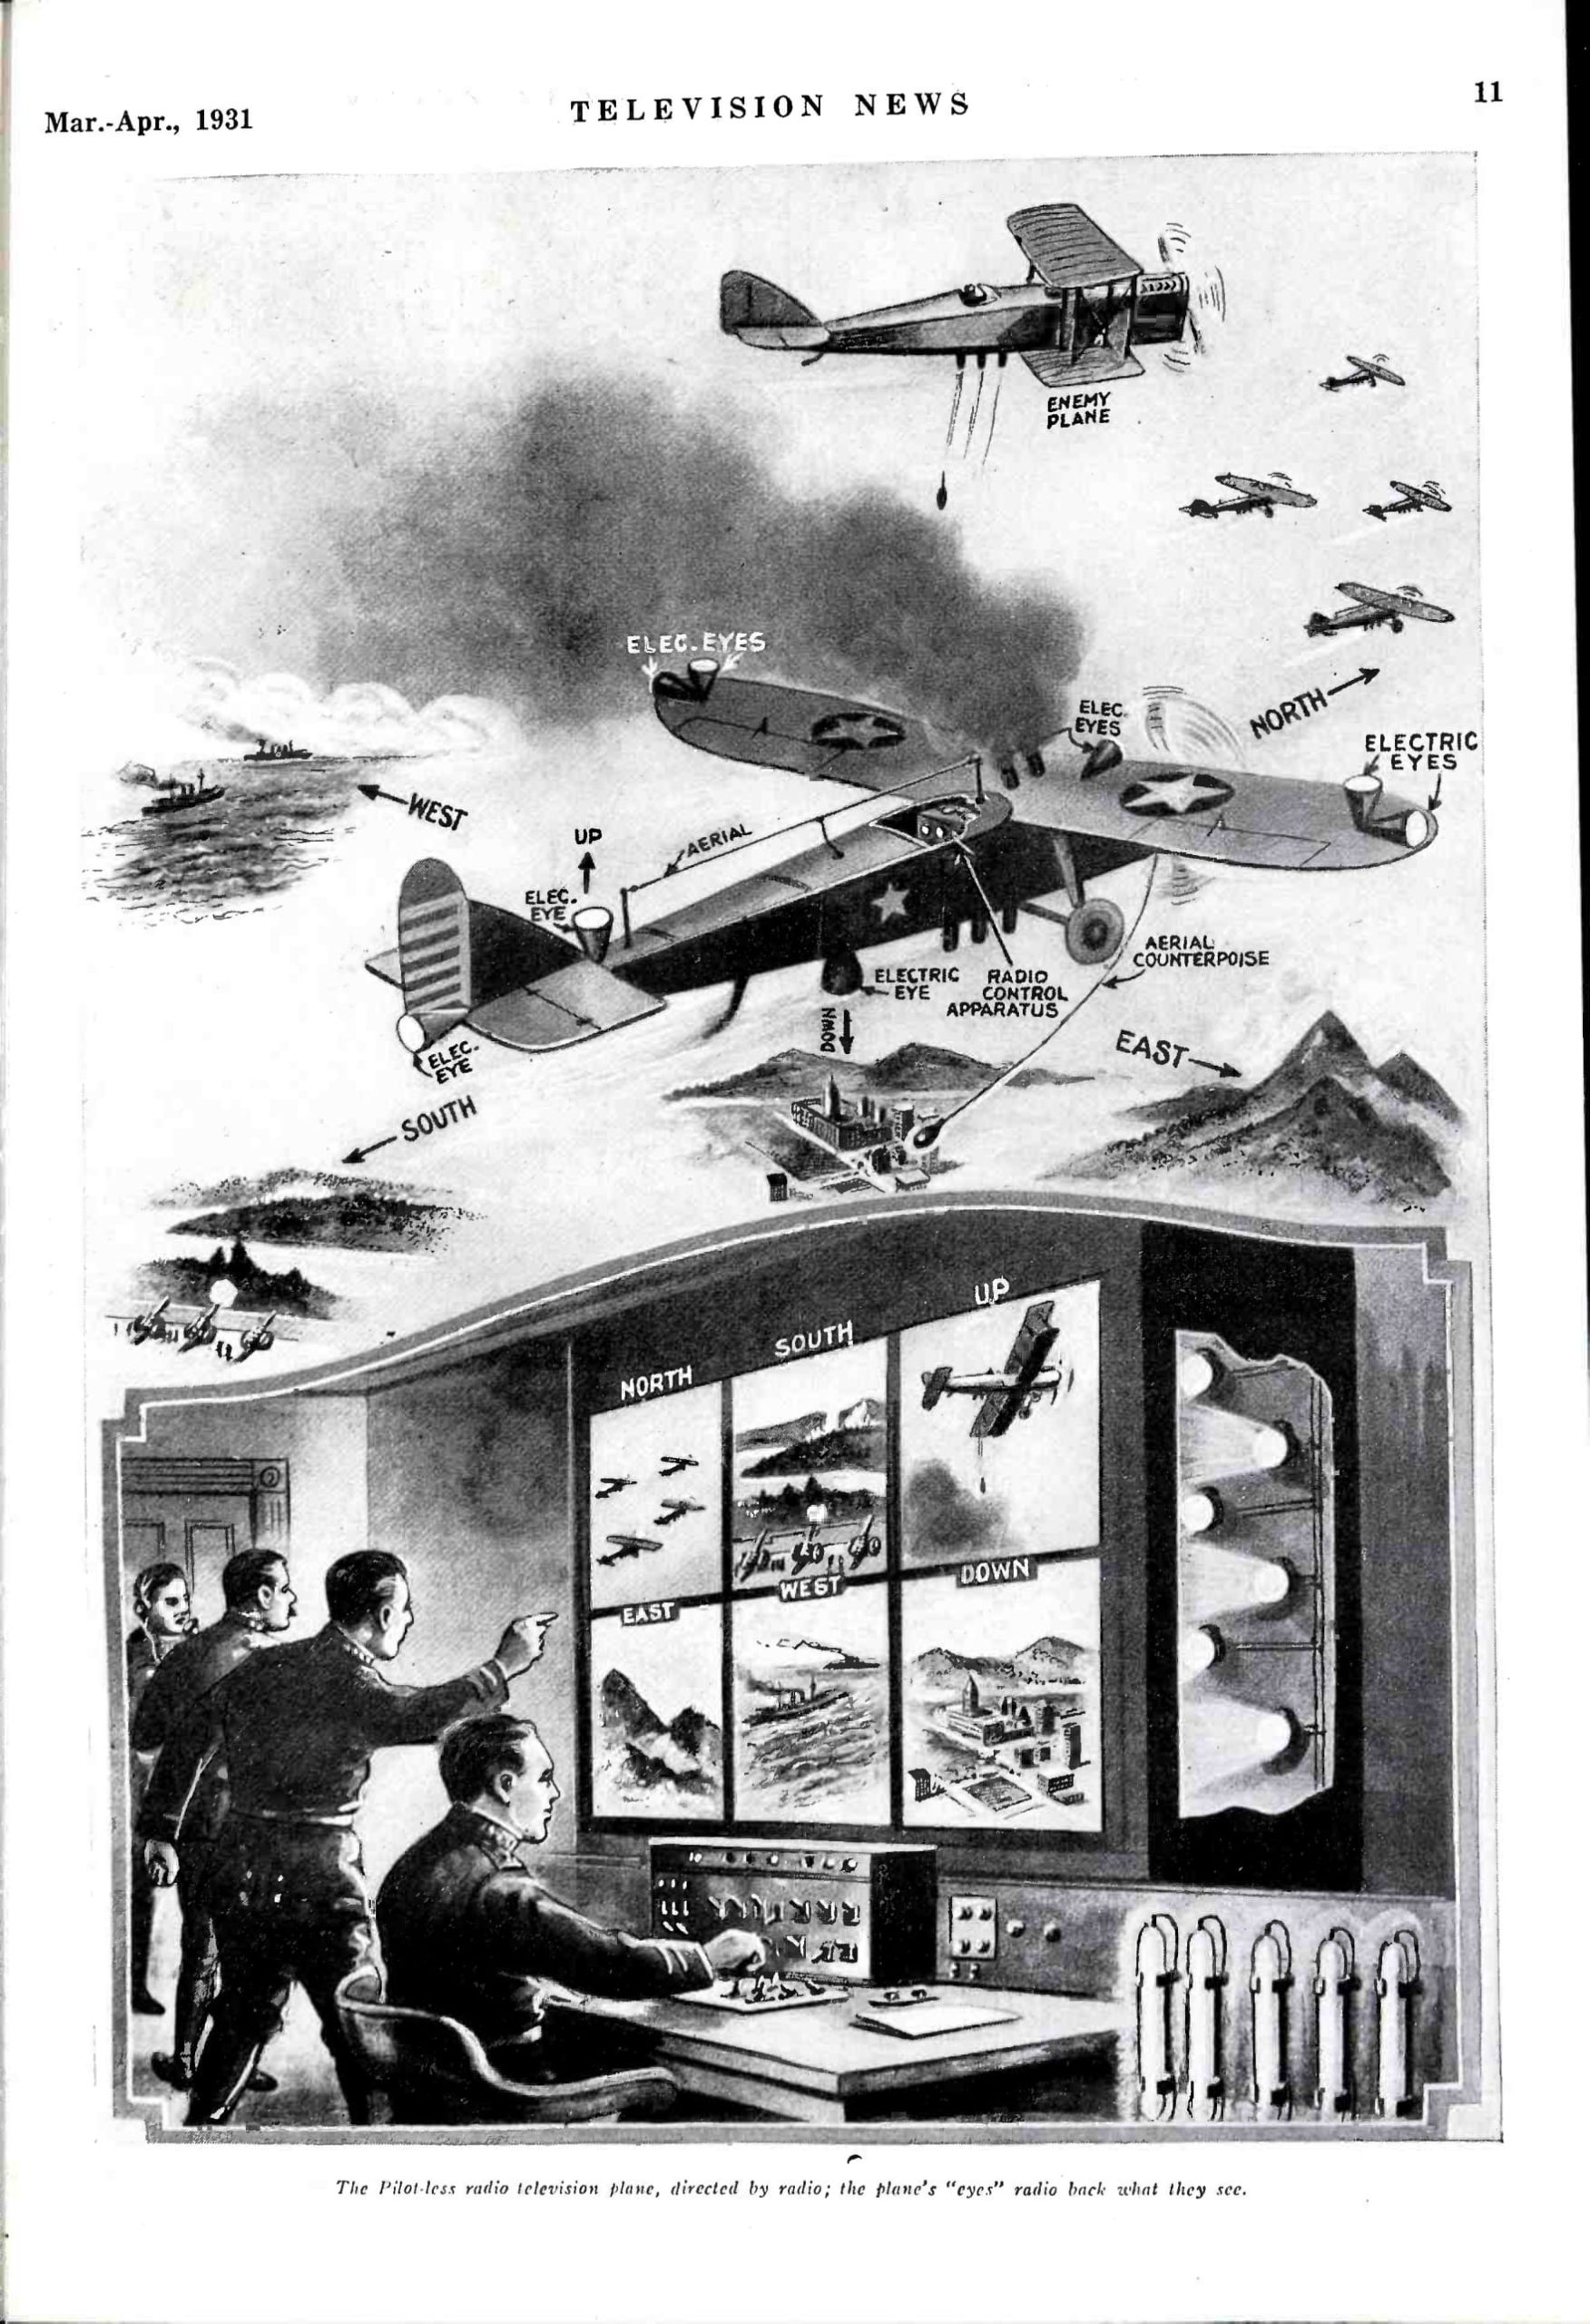 imagem de 1931 mostrando o uso de drones em combate